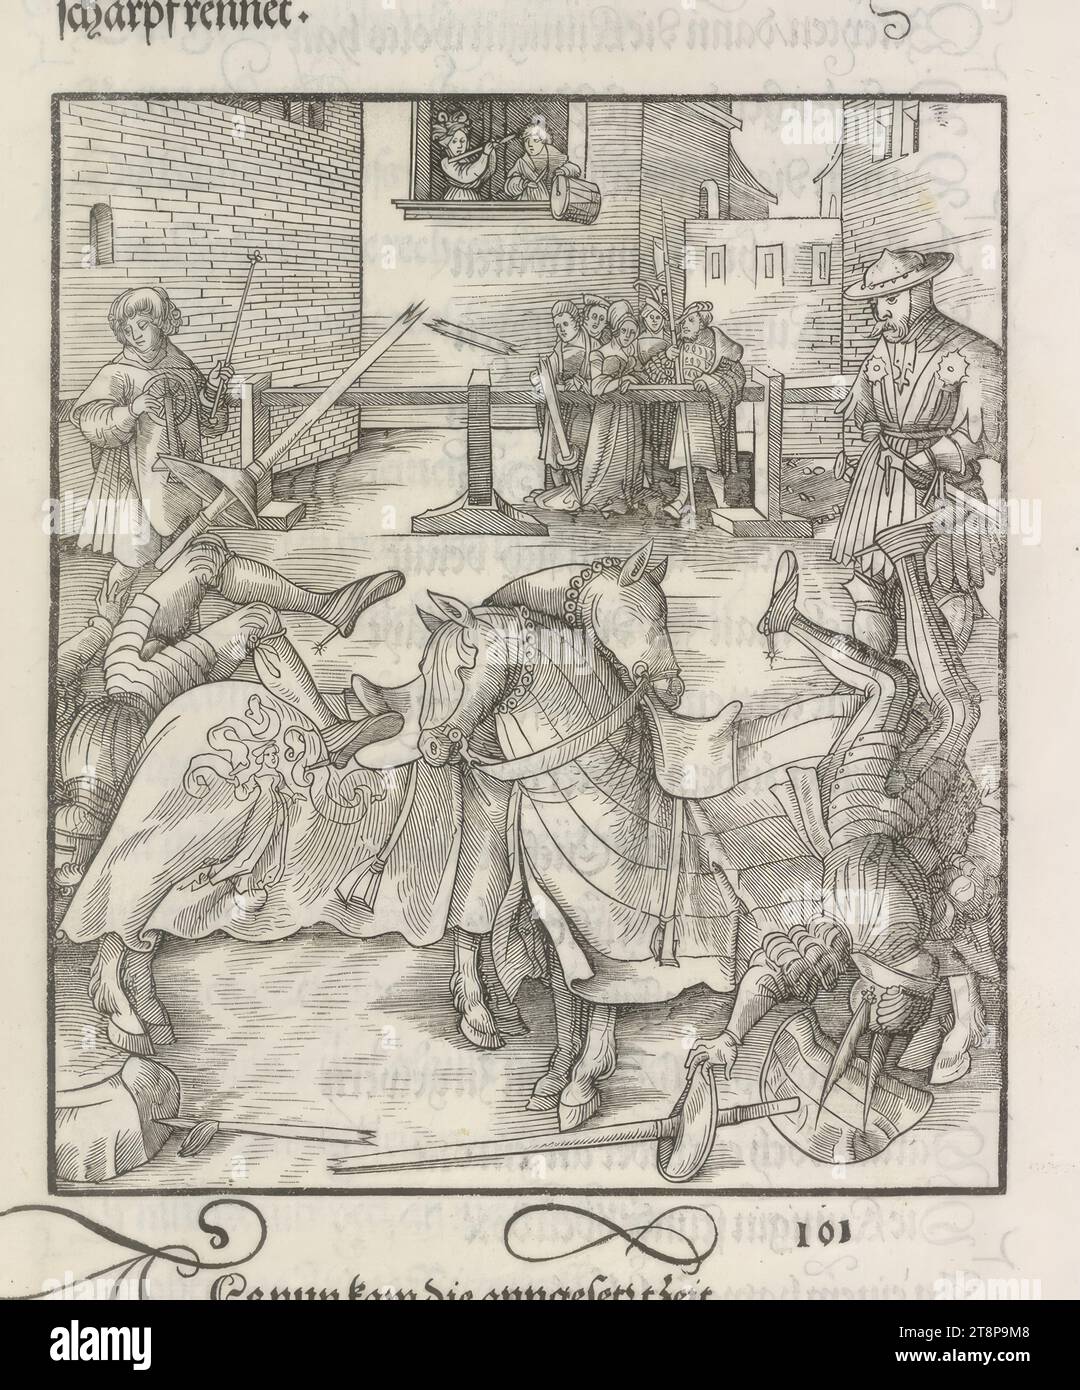 Theuerdank : image 101 - dans cette course, Theuerdank et son adversaire tombent de leur cheval, le 'Theuerdank' de l'empereur Maximilien I, Leonhard Beck (Augsbourg vers 1475/80 - 1542 Augsbourg), 1517, impression, gravure sur bois, feuille : 34, 7 x 24,3 cm Banque D'Images